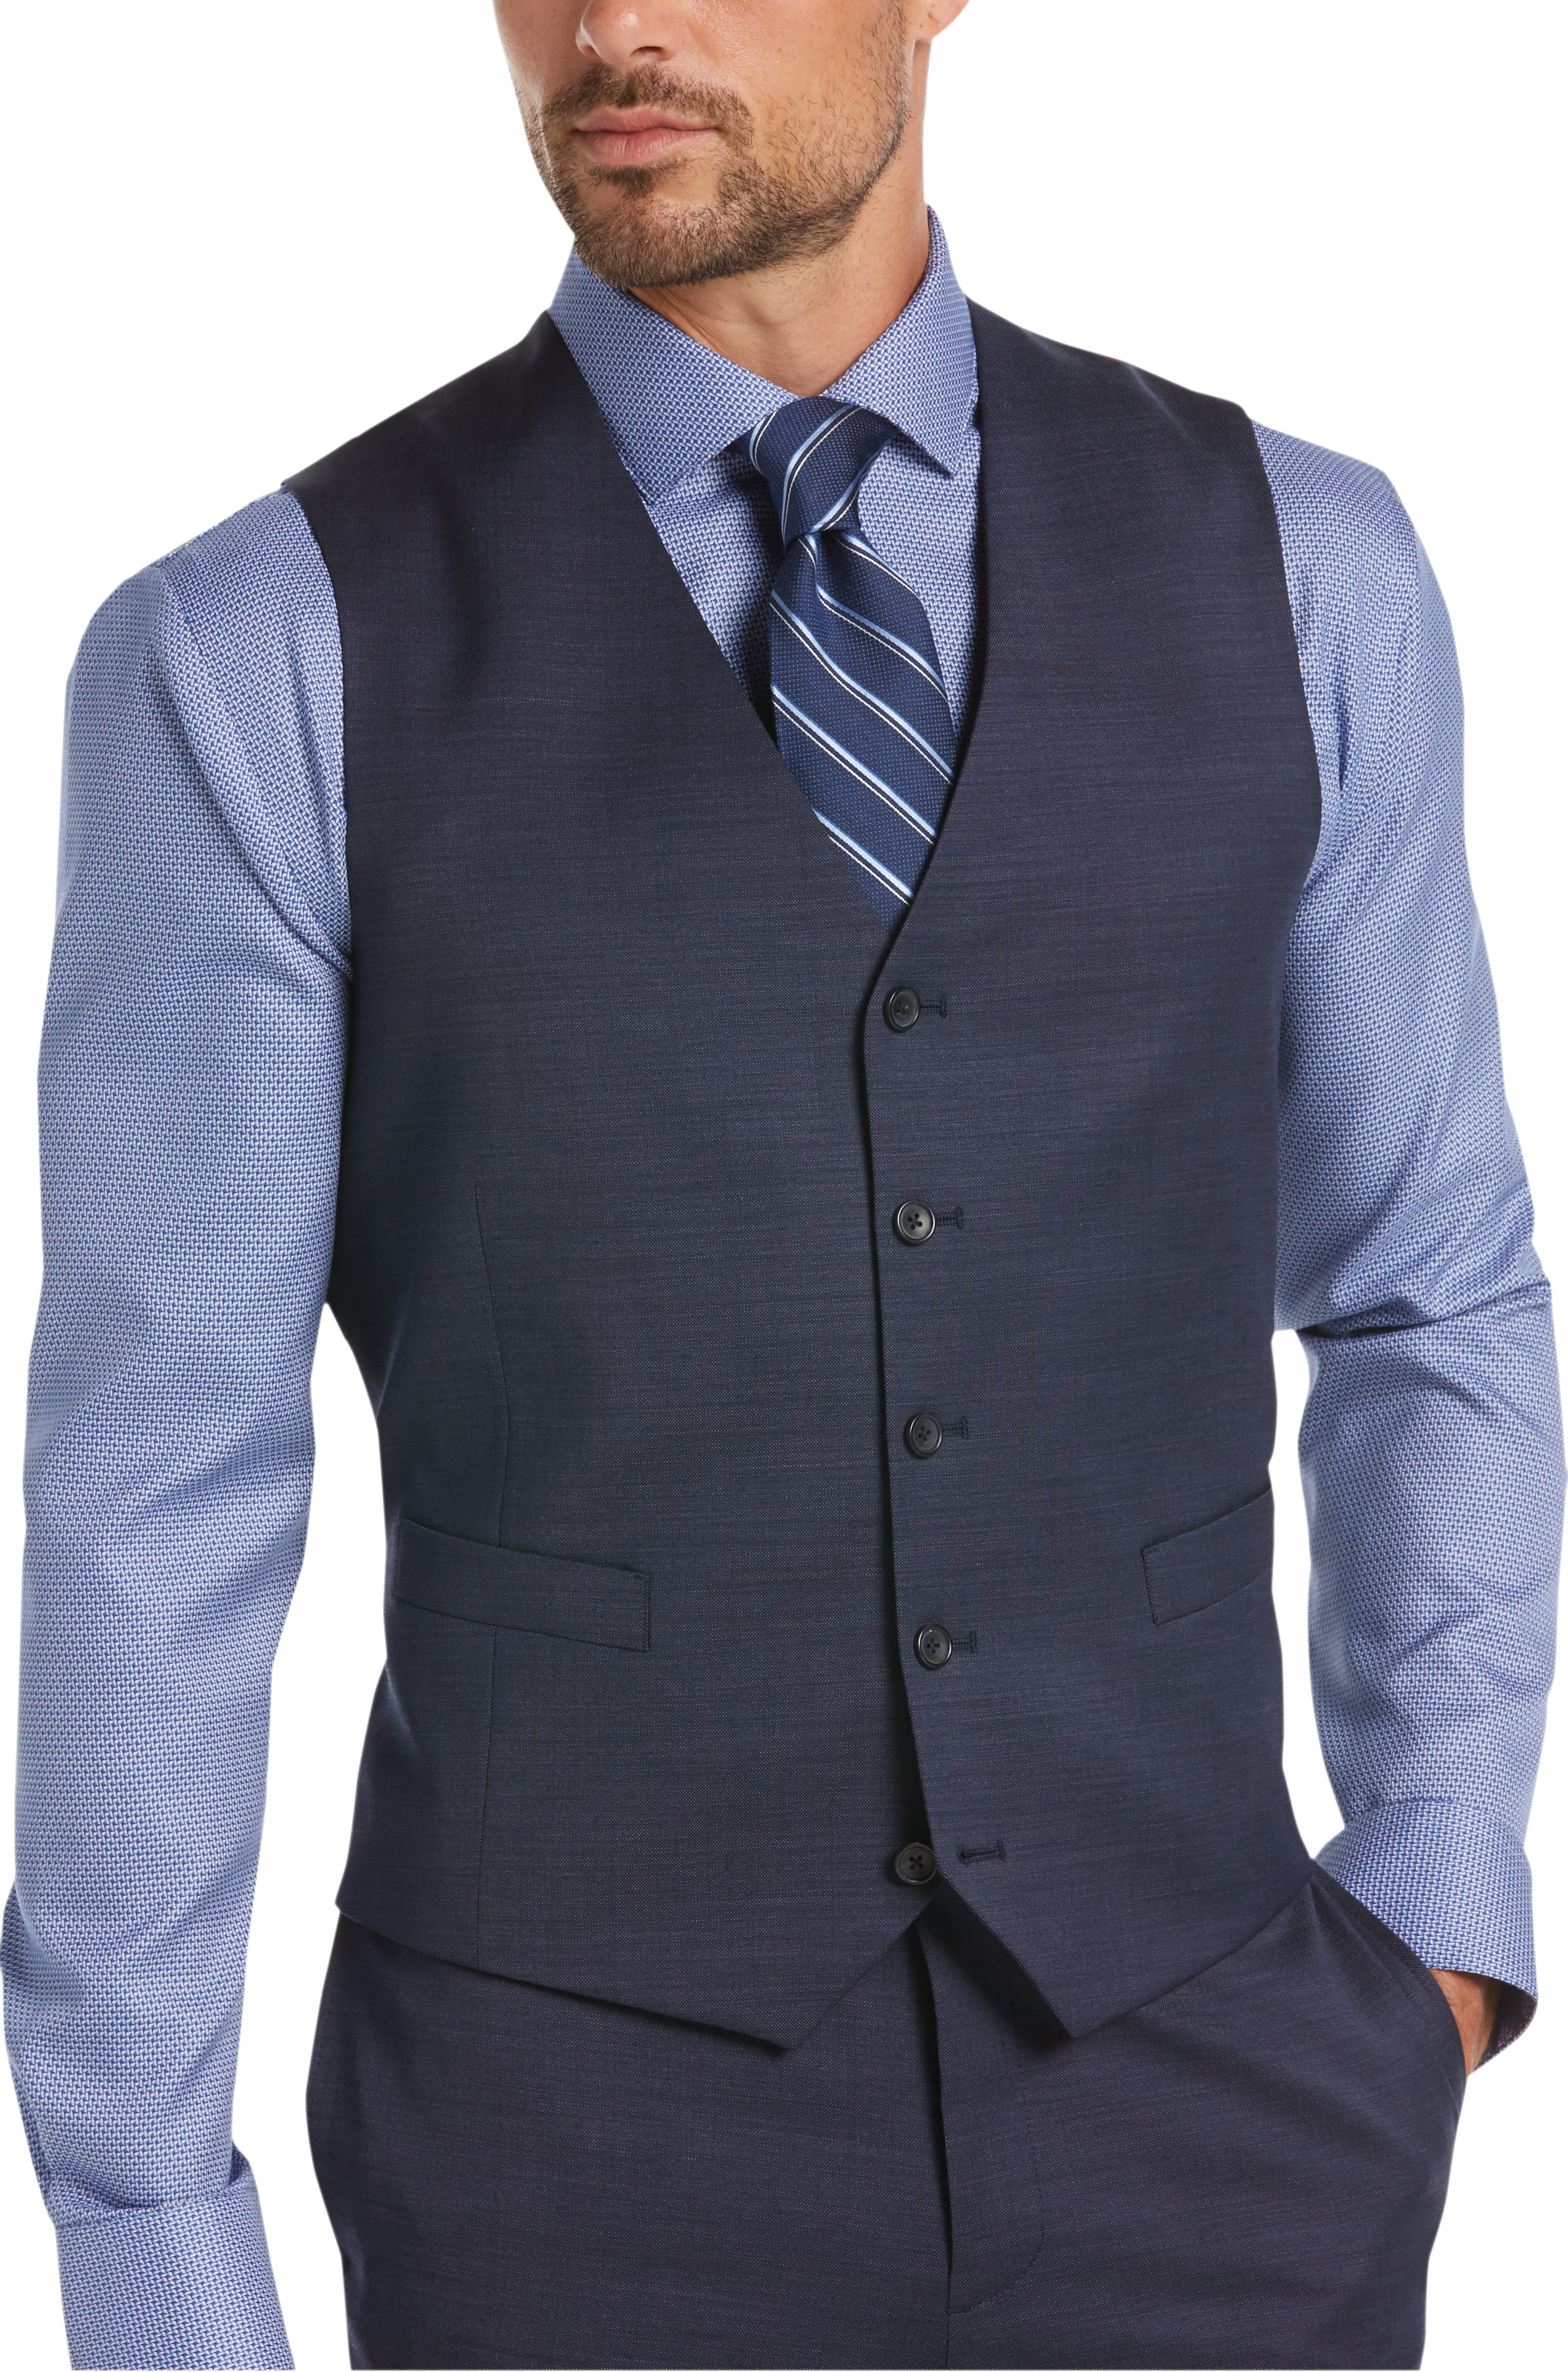 Awearness Kenneth Cole Blue Suit Separates Vest - Men's Suit Separate ...